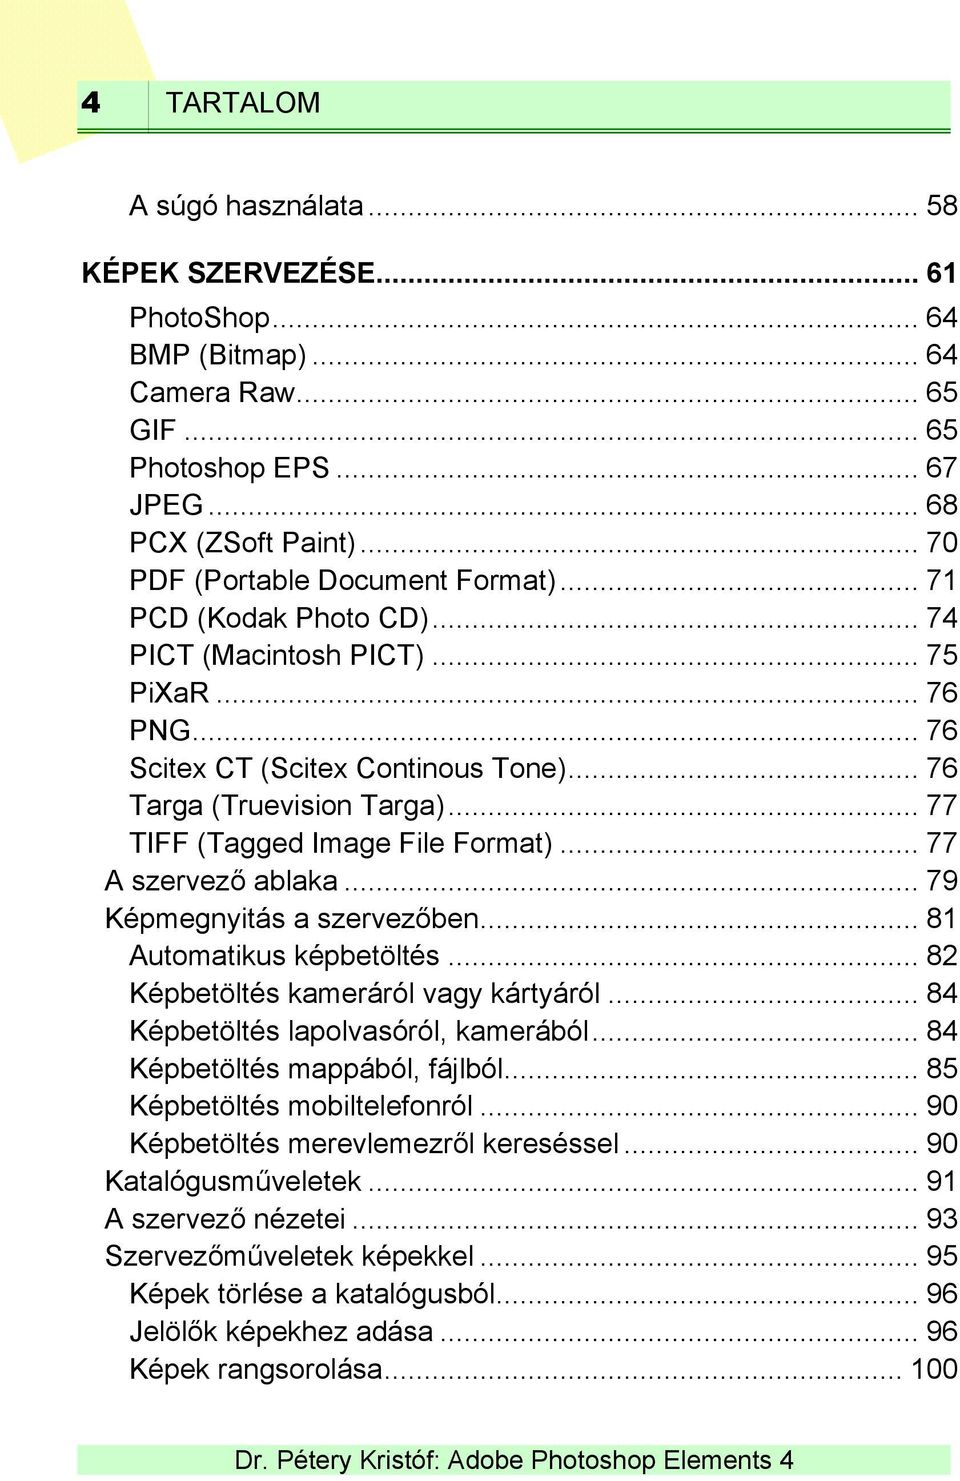 .. 77 TIFF (Tagged Image File Format)... 77 A szervező ablaka... 79 Képmegnyitás a szervezőben... 81 Automatikus képbetöltés... 82 Képbetöltés kameráról vagy kártyáról.